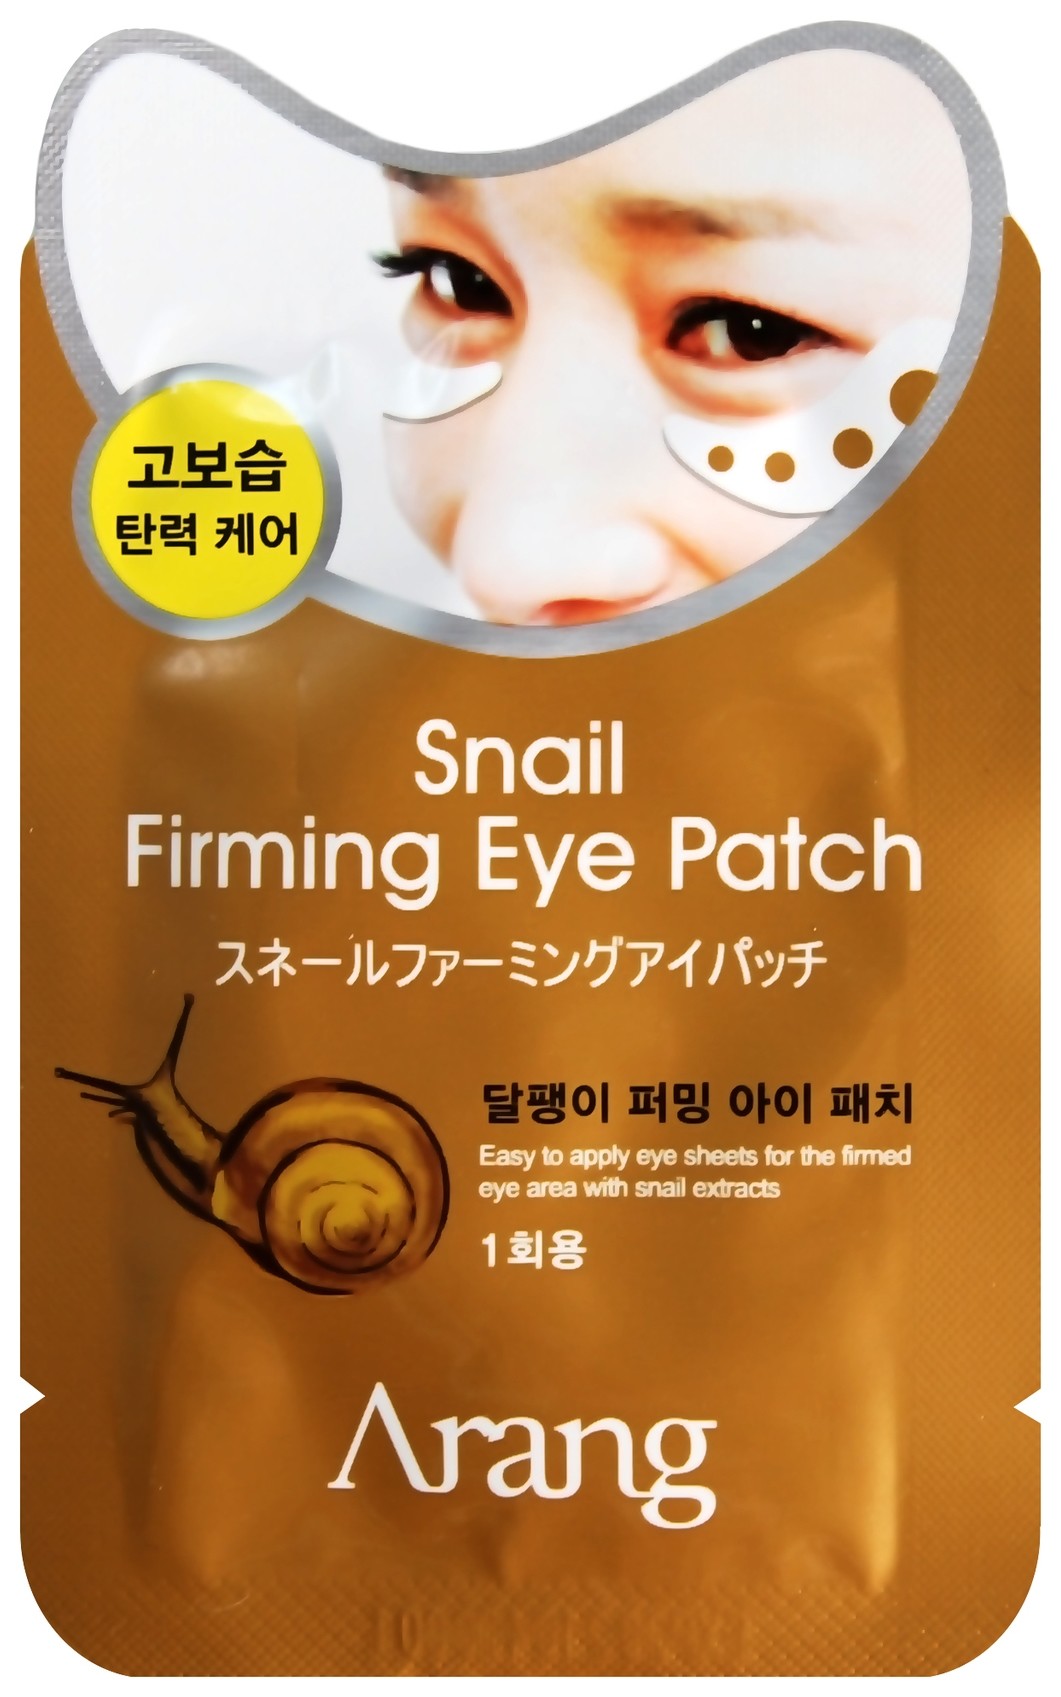 Укрепляющая маска-патч под глаза с экстрактом секрета улитки "Snail Firming Eye Patch" отзывы